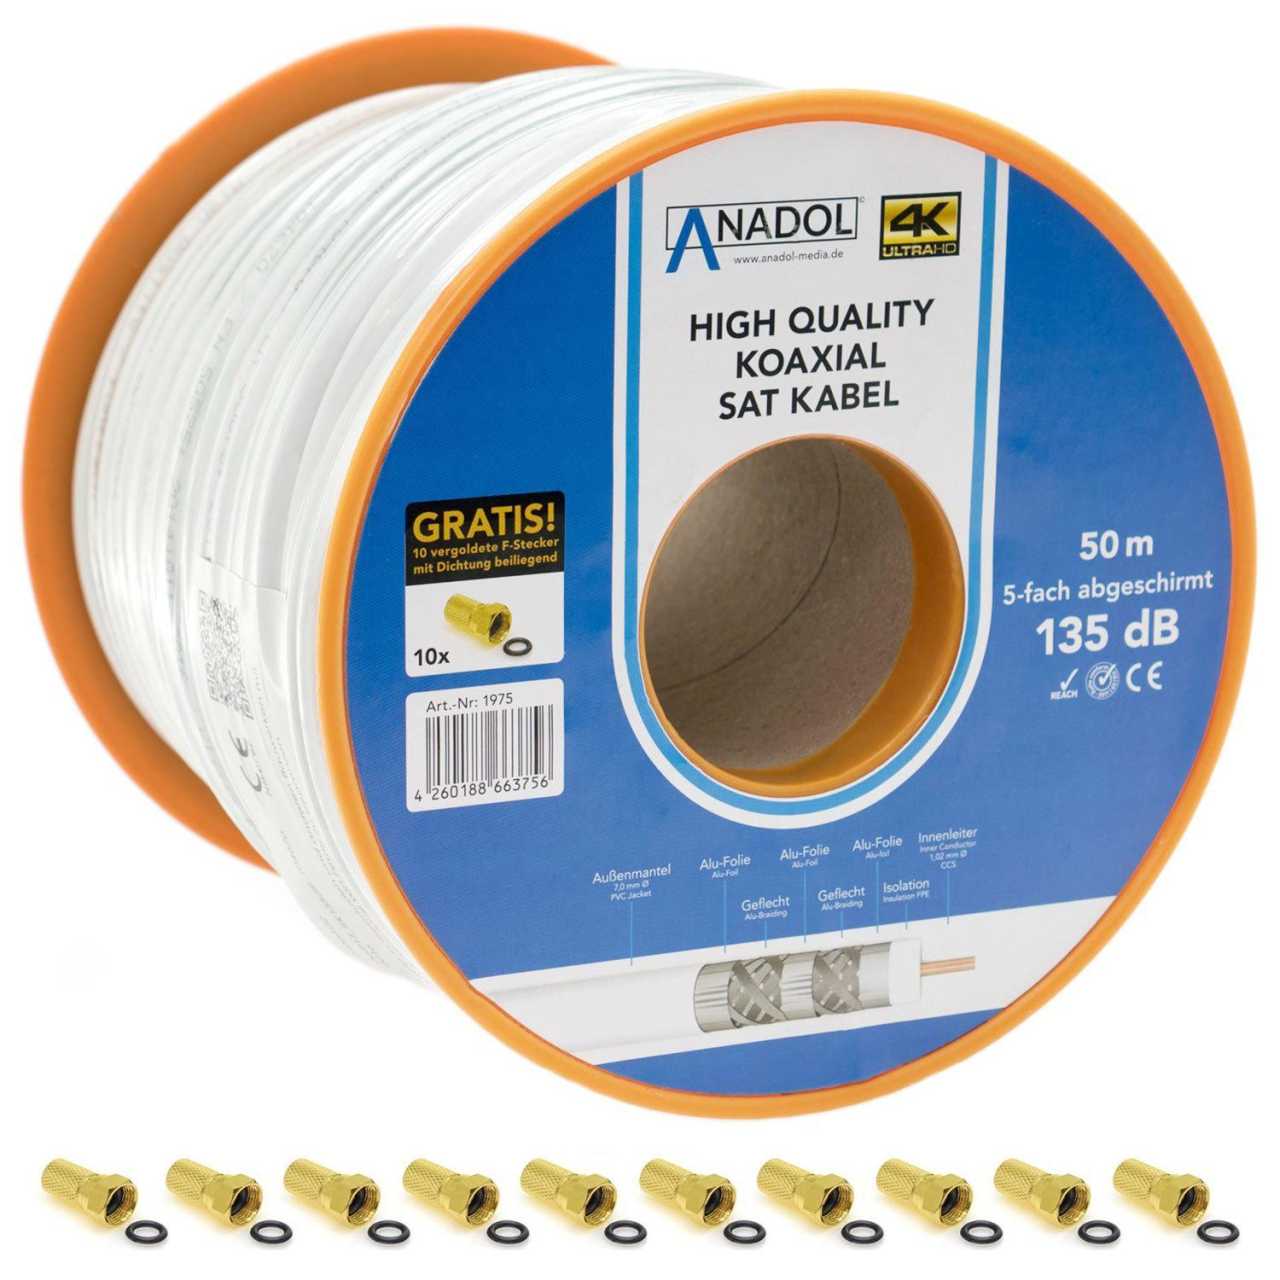 Anadol Koax Sat Kabel 50m CCS 135dB 5fach Brandschutz EN 50575 HQ inkl. Stecker von Anadol